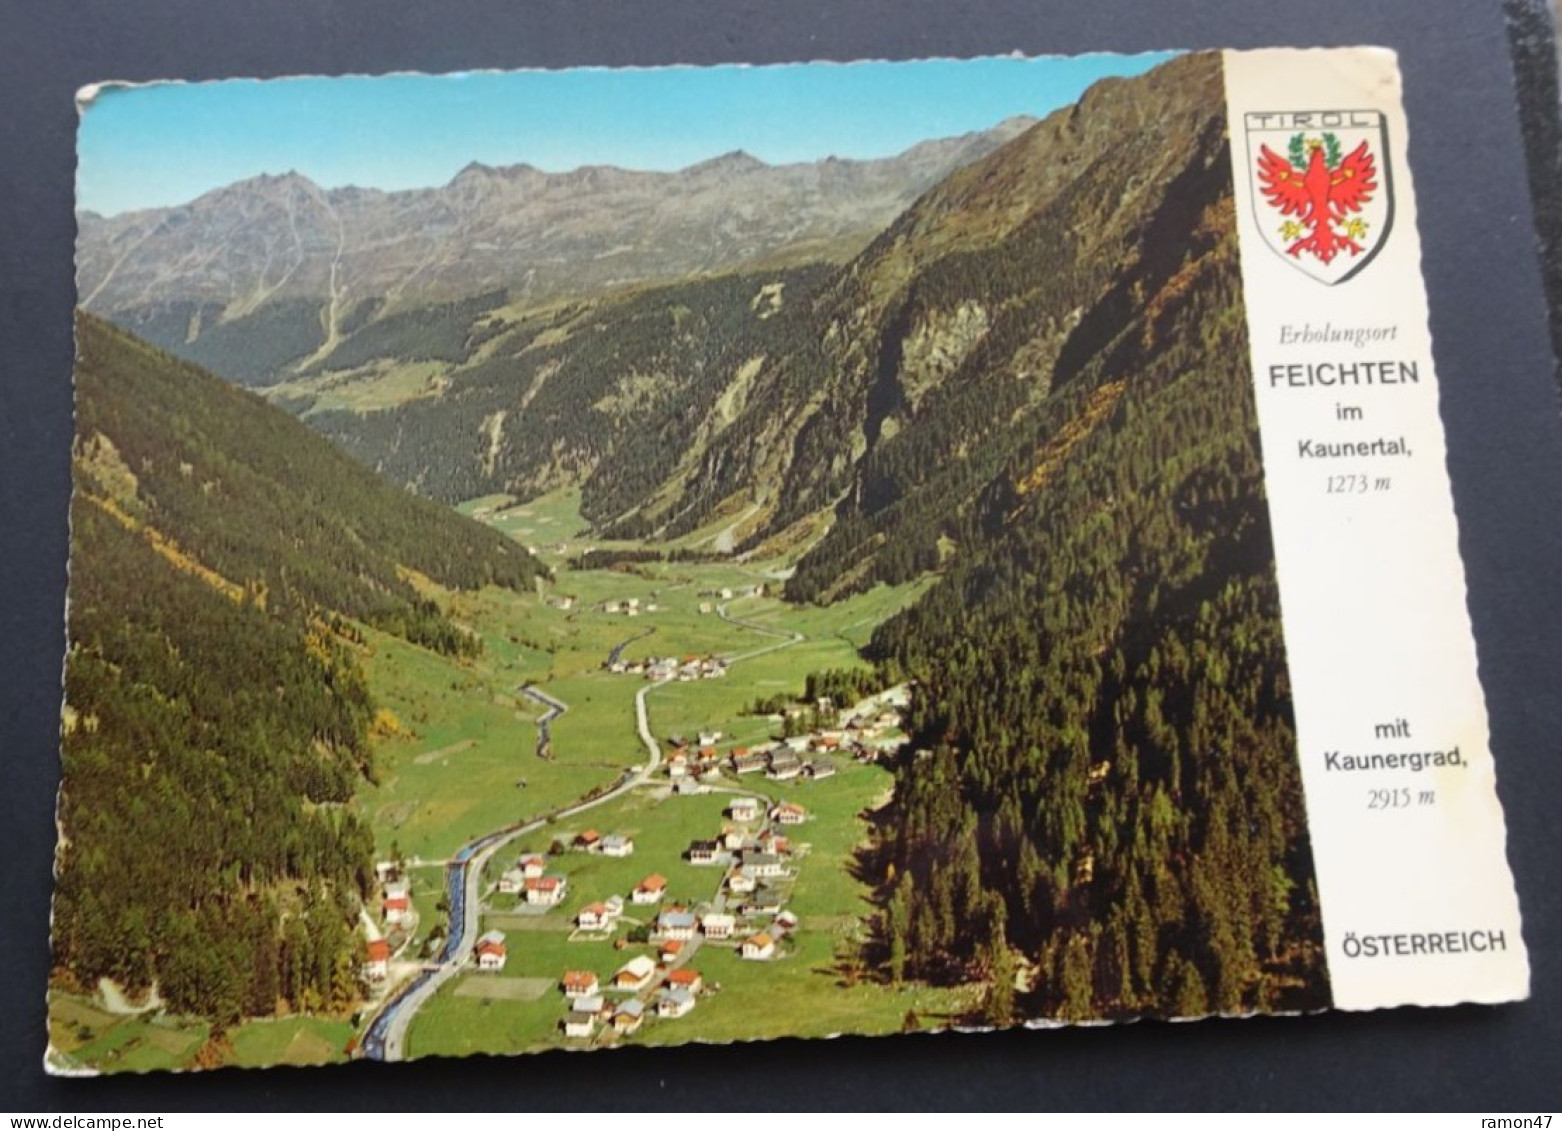 Feichten Im Kaunertal Mit Kaunergrad - Alpine Luftbild Innsbruck - # FÖ 58953 - Kaunertal